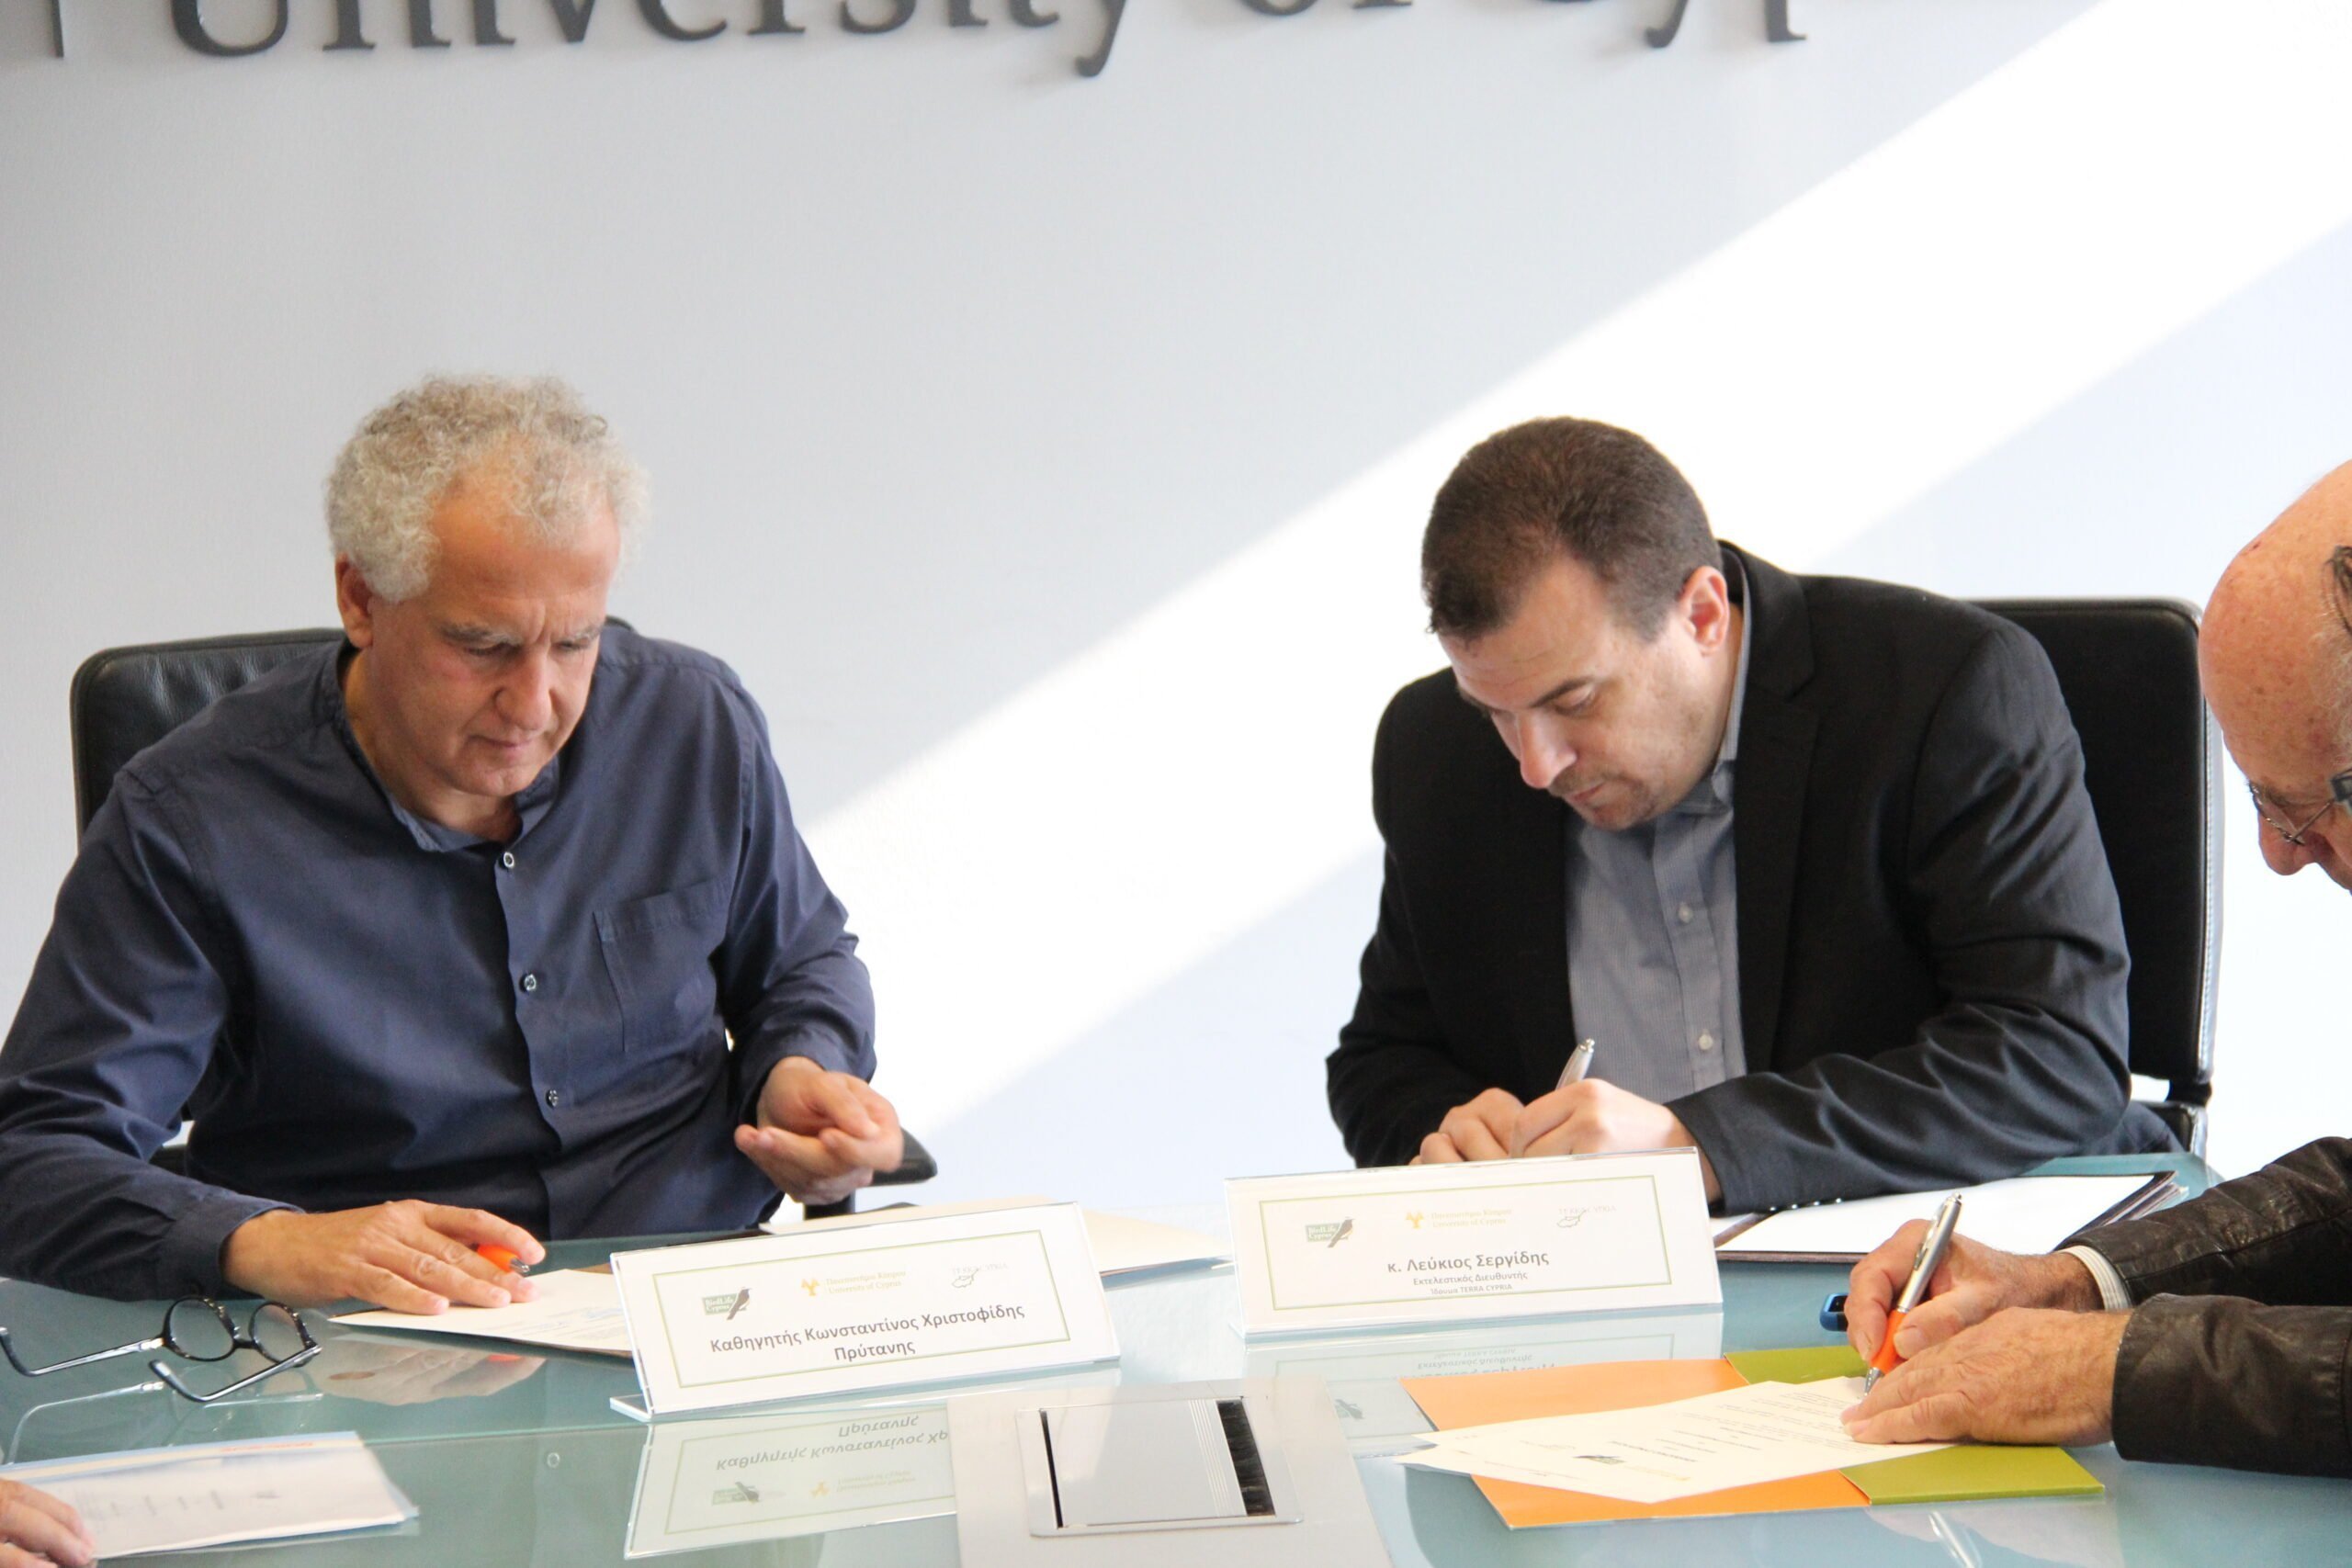 Υπογράψαμε Μνημόνιο Συνεργασίας με το Πανεπιστήμιο Κύπρου και τον Πτηνολογικό Σύνδεσμο Κύπρου